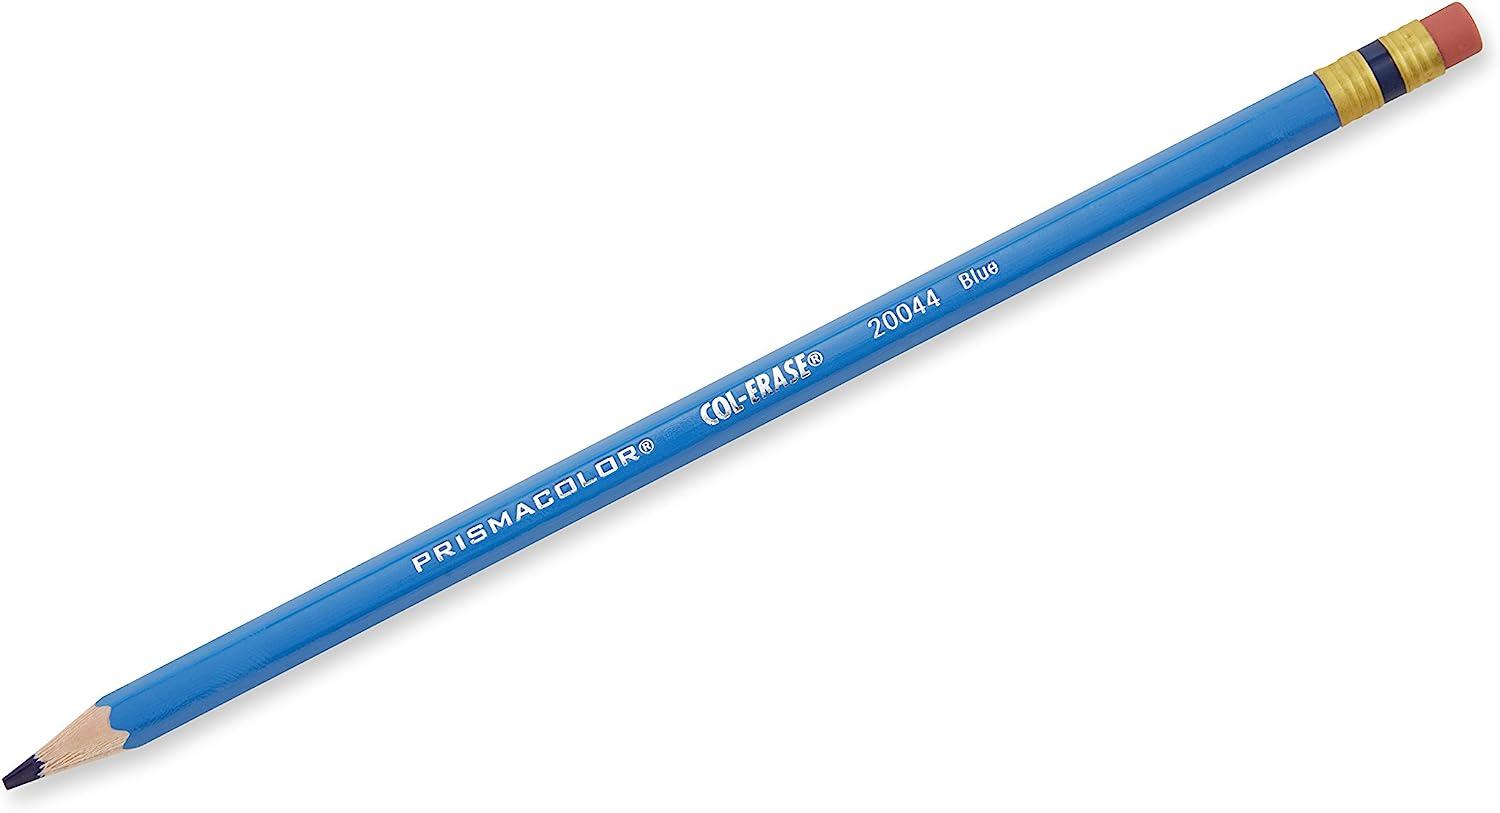 Prismacolor® Col-Erase® Pencil with Eraser